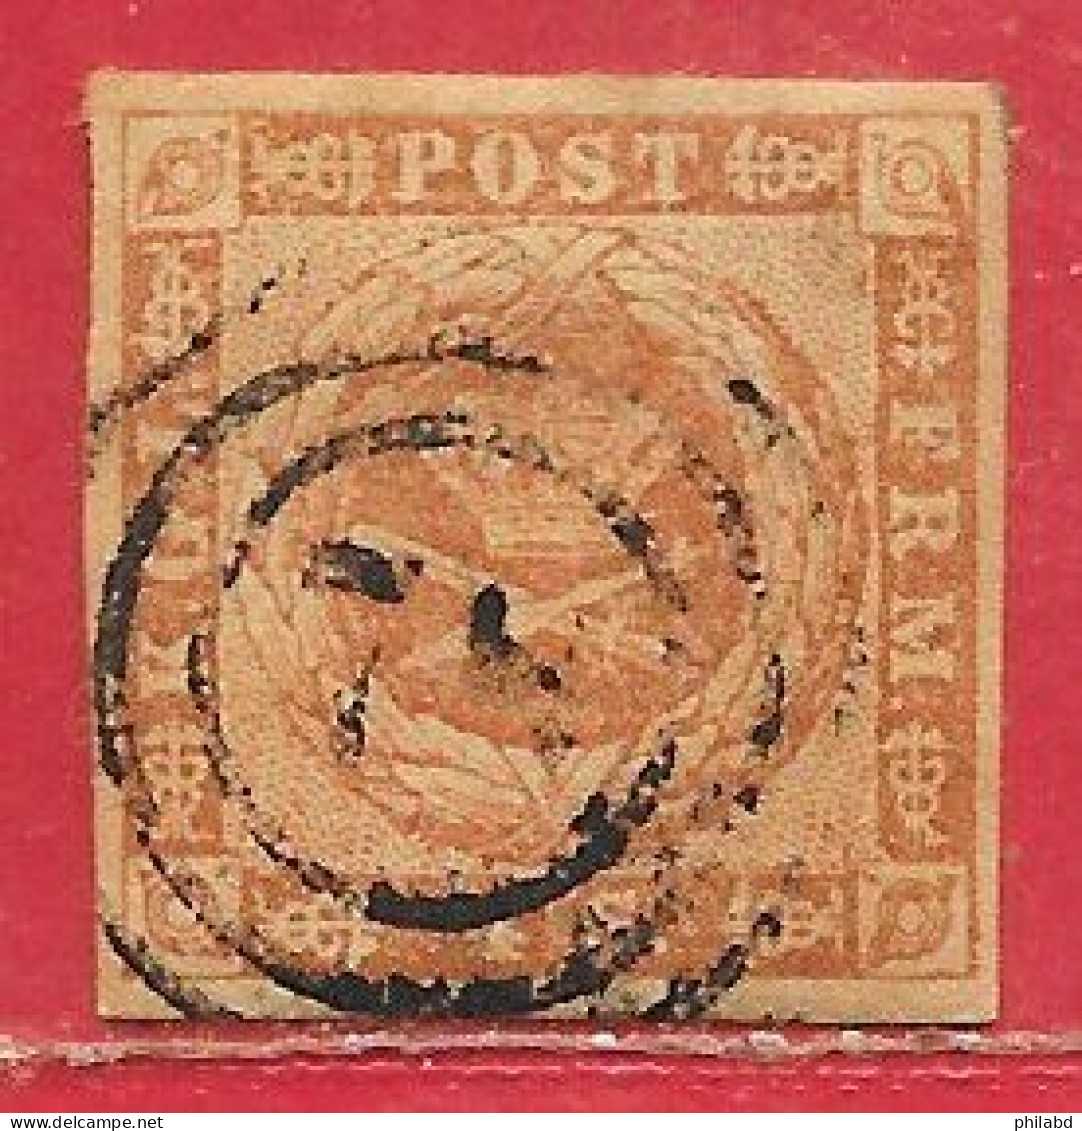 Danemark N°4 4s Jaune-brun 1854-63 O - Used Stamps